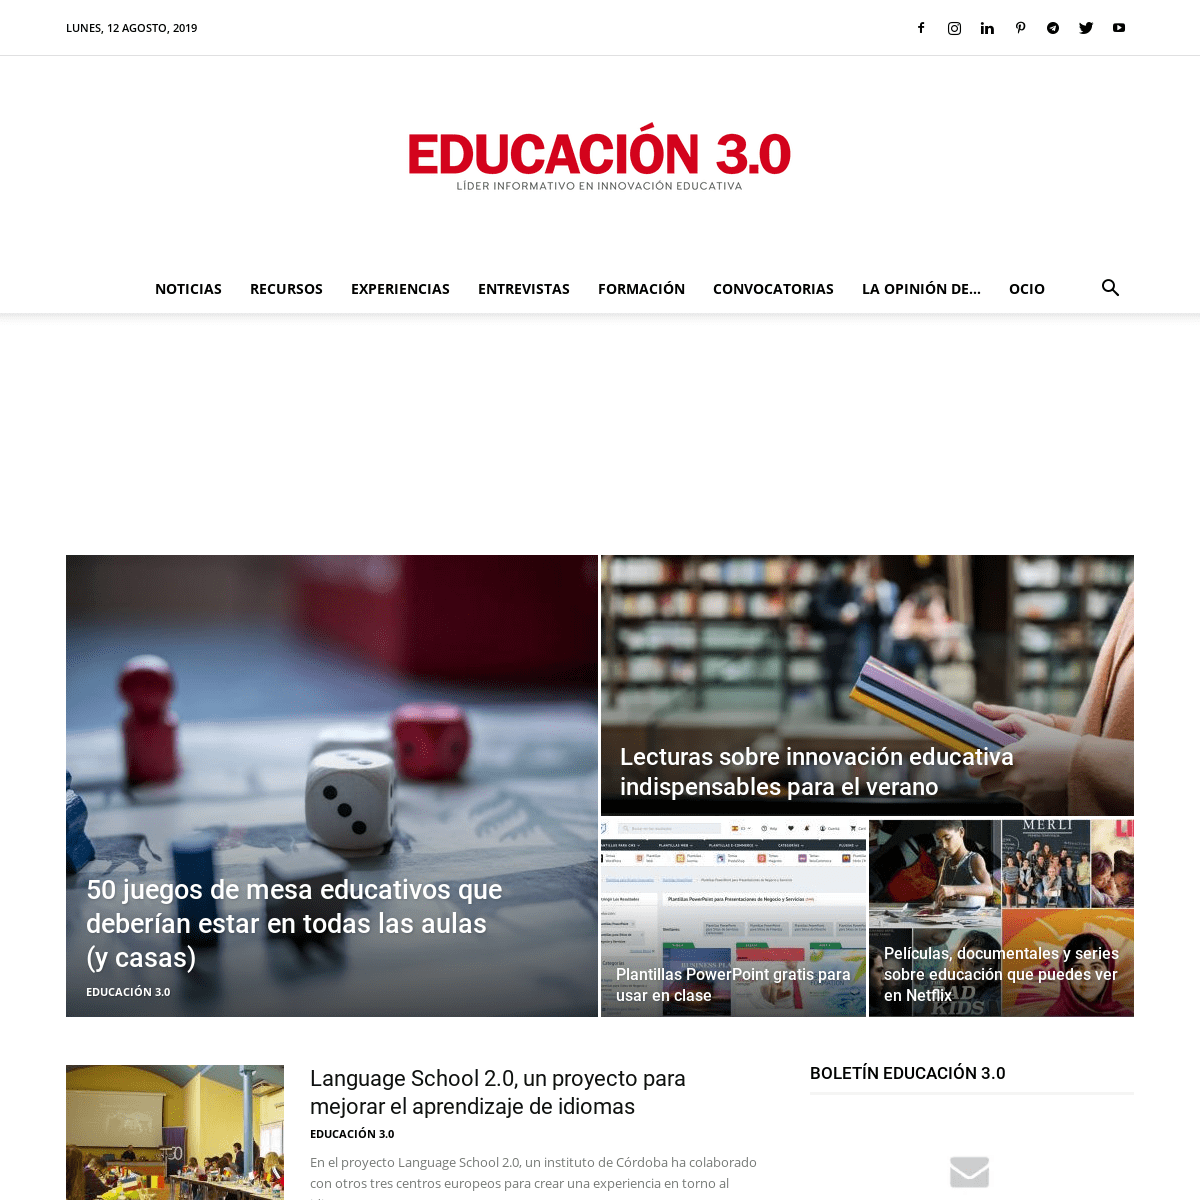 EDUCACIÓN 3.0 | Líder informativo en innovación educativa